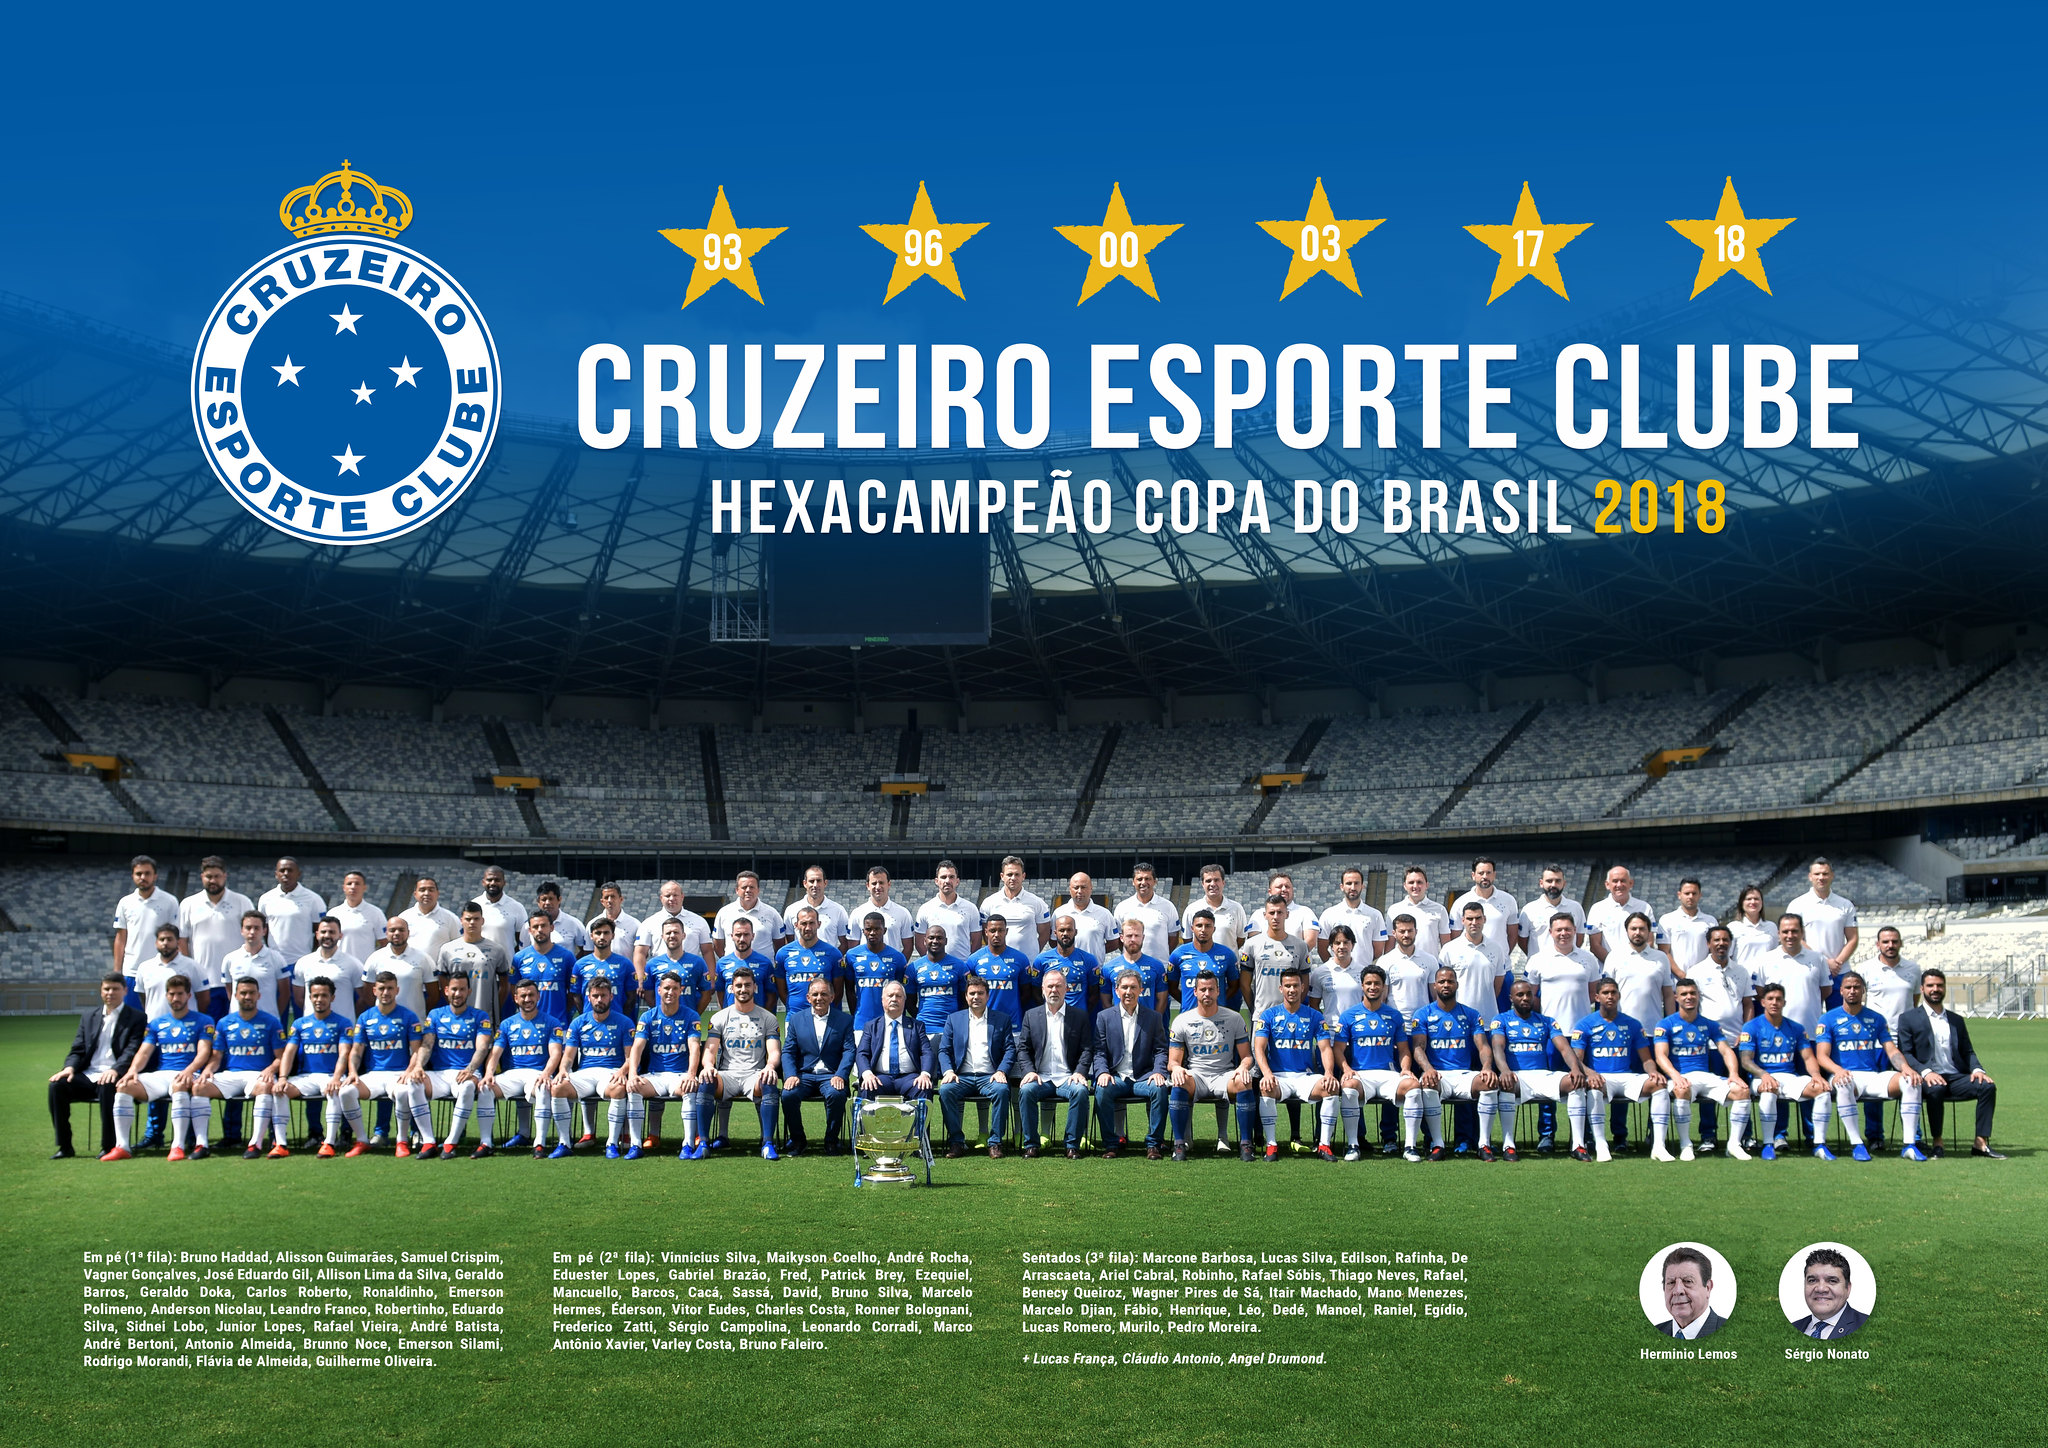 Campeão da Série B, Cruzeiro divulga fotos dos jogadores com as medalhas e o troféu: confira